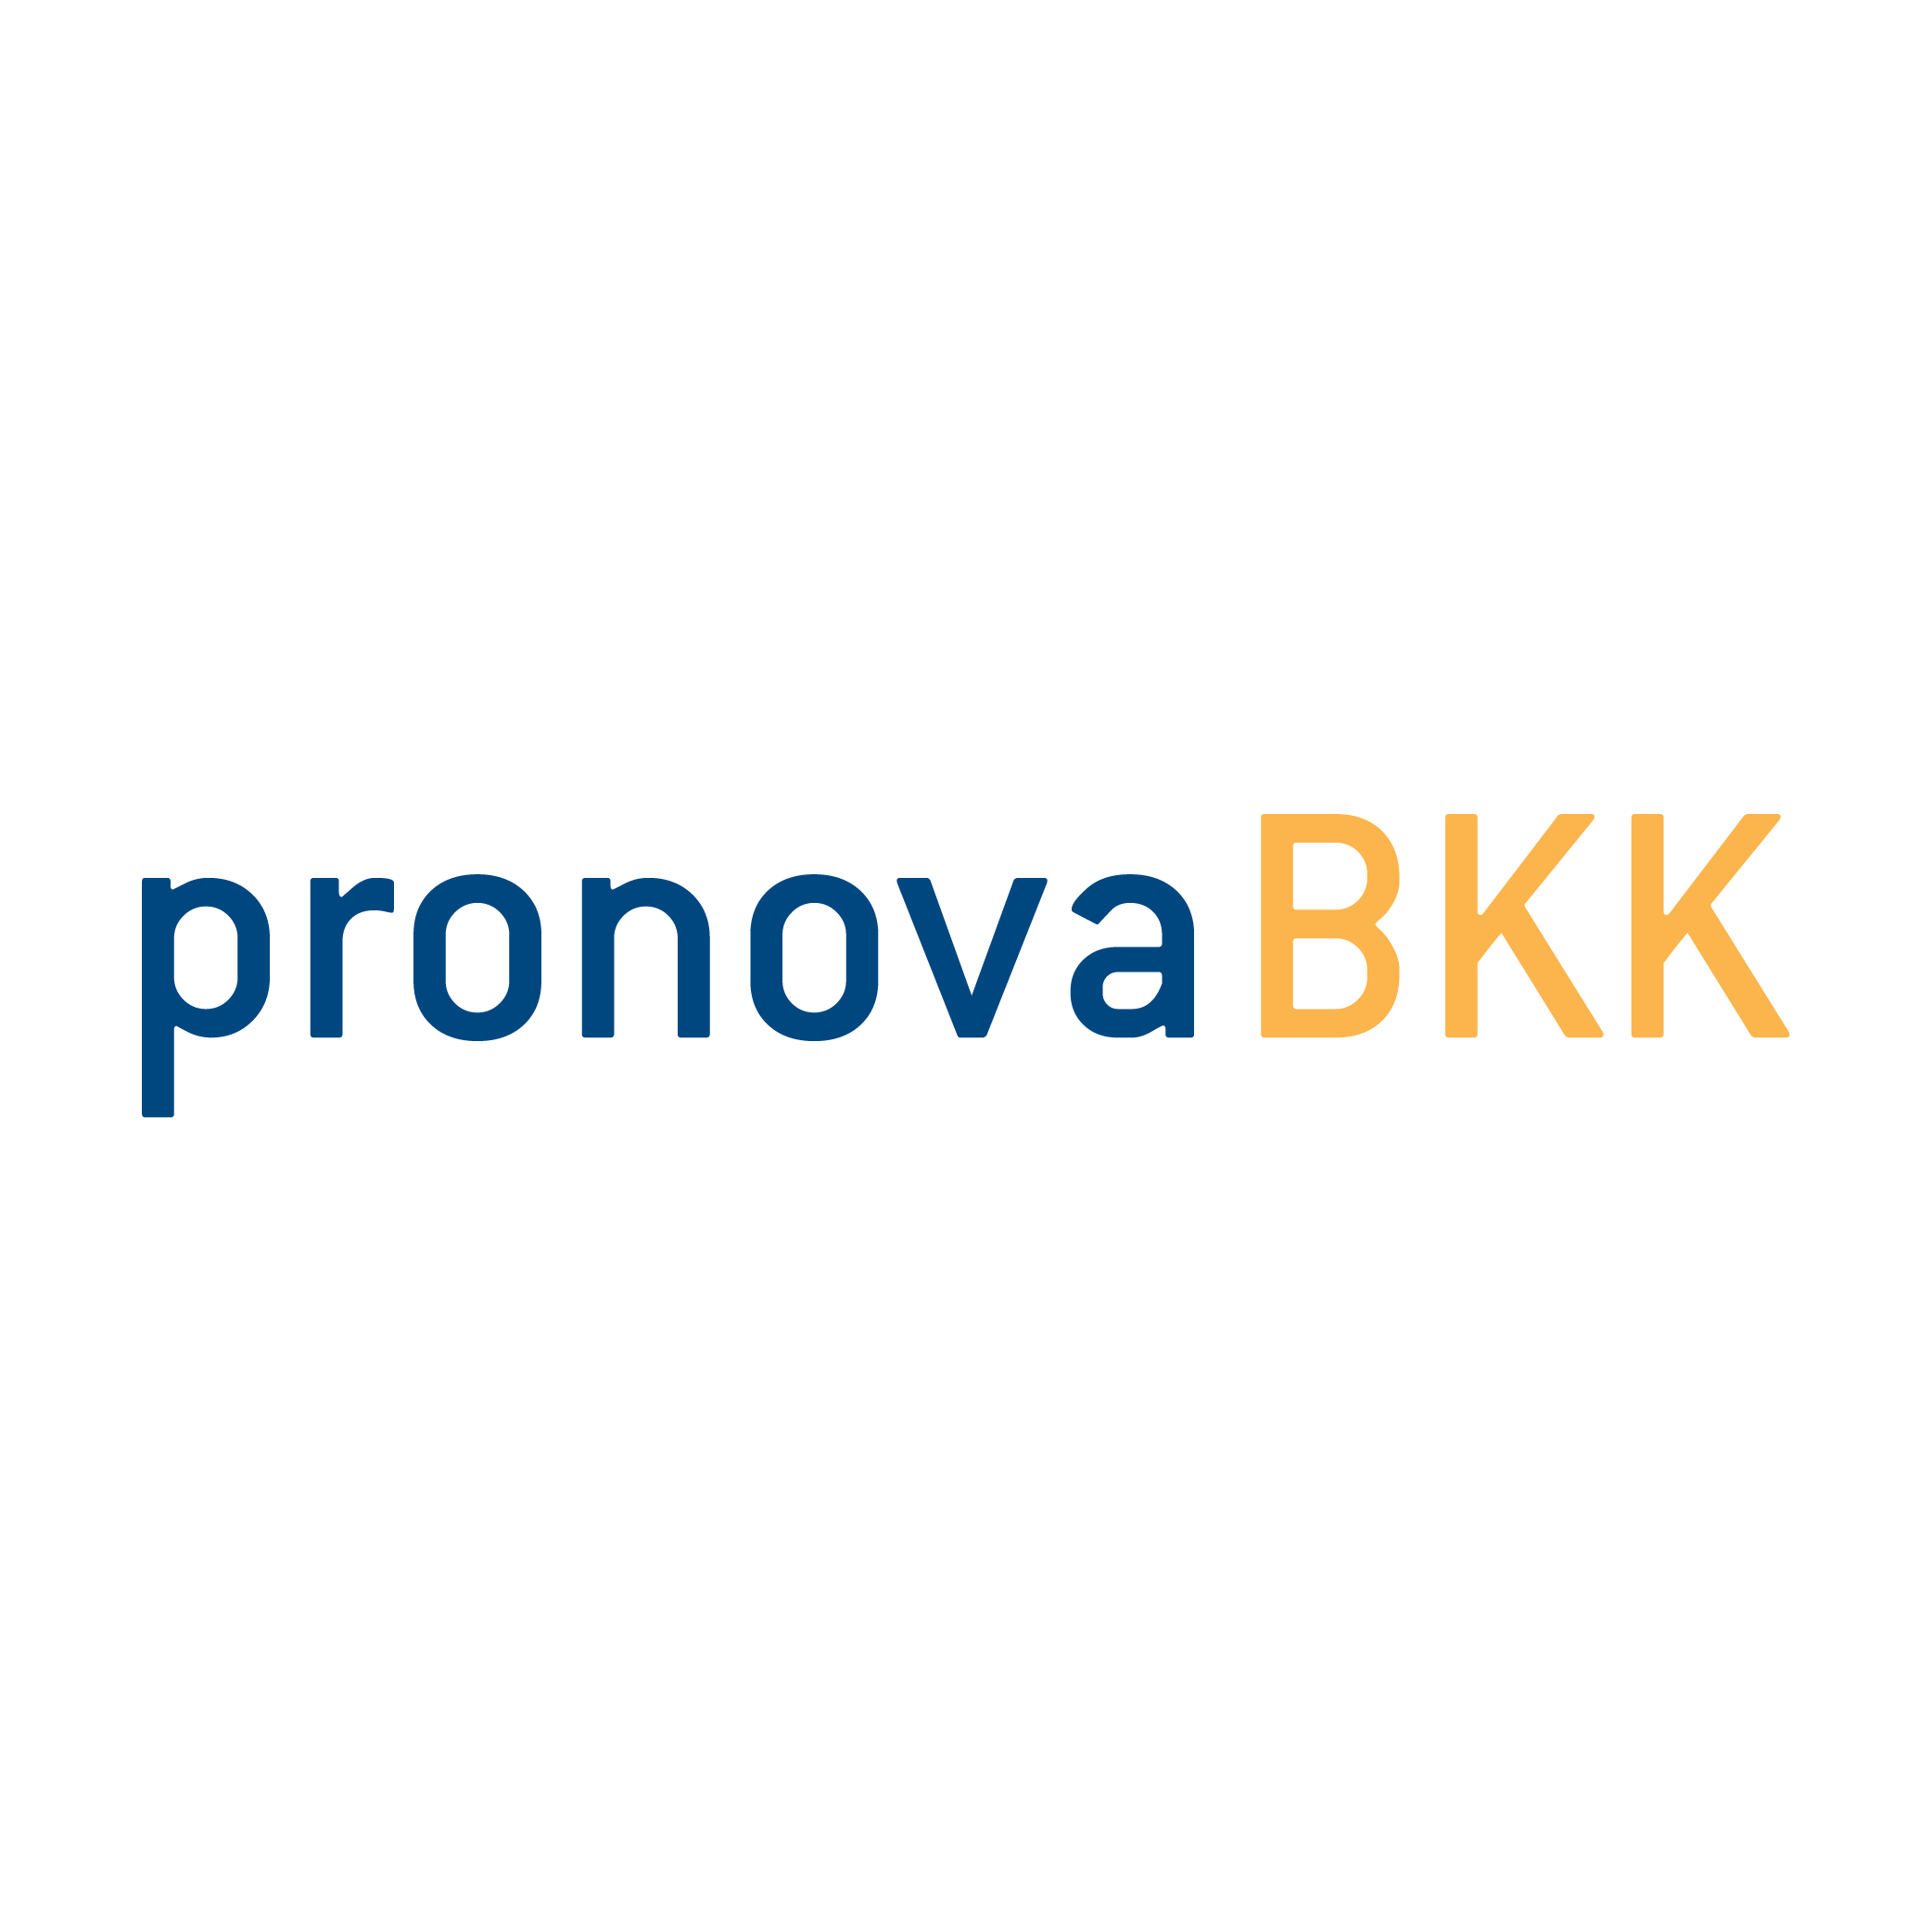 Markenzeichen der pronova BKK